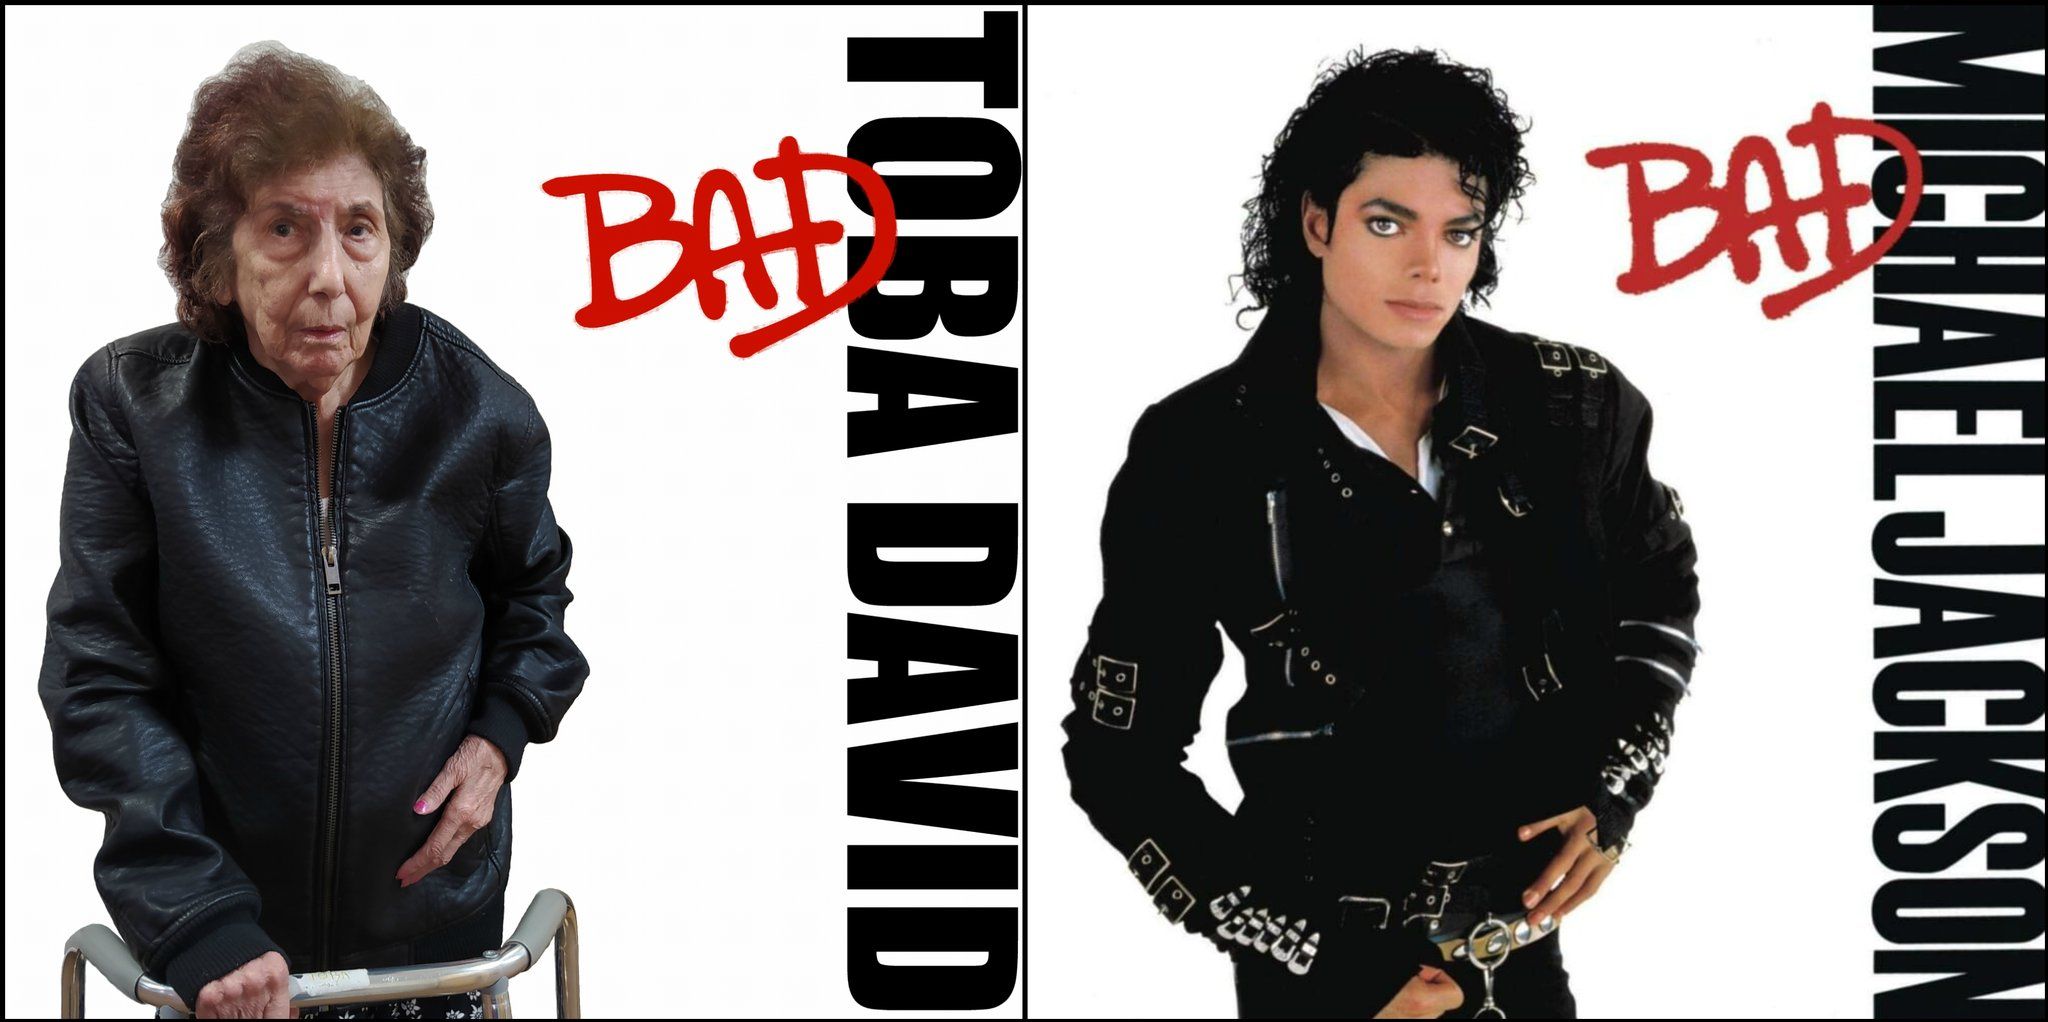 Toba David, sujeta a su andador, recrea la mítica portada del Bad de Michael Jackson